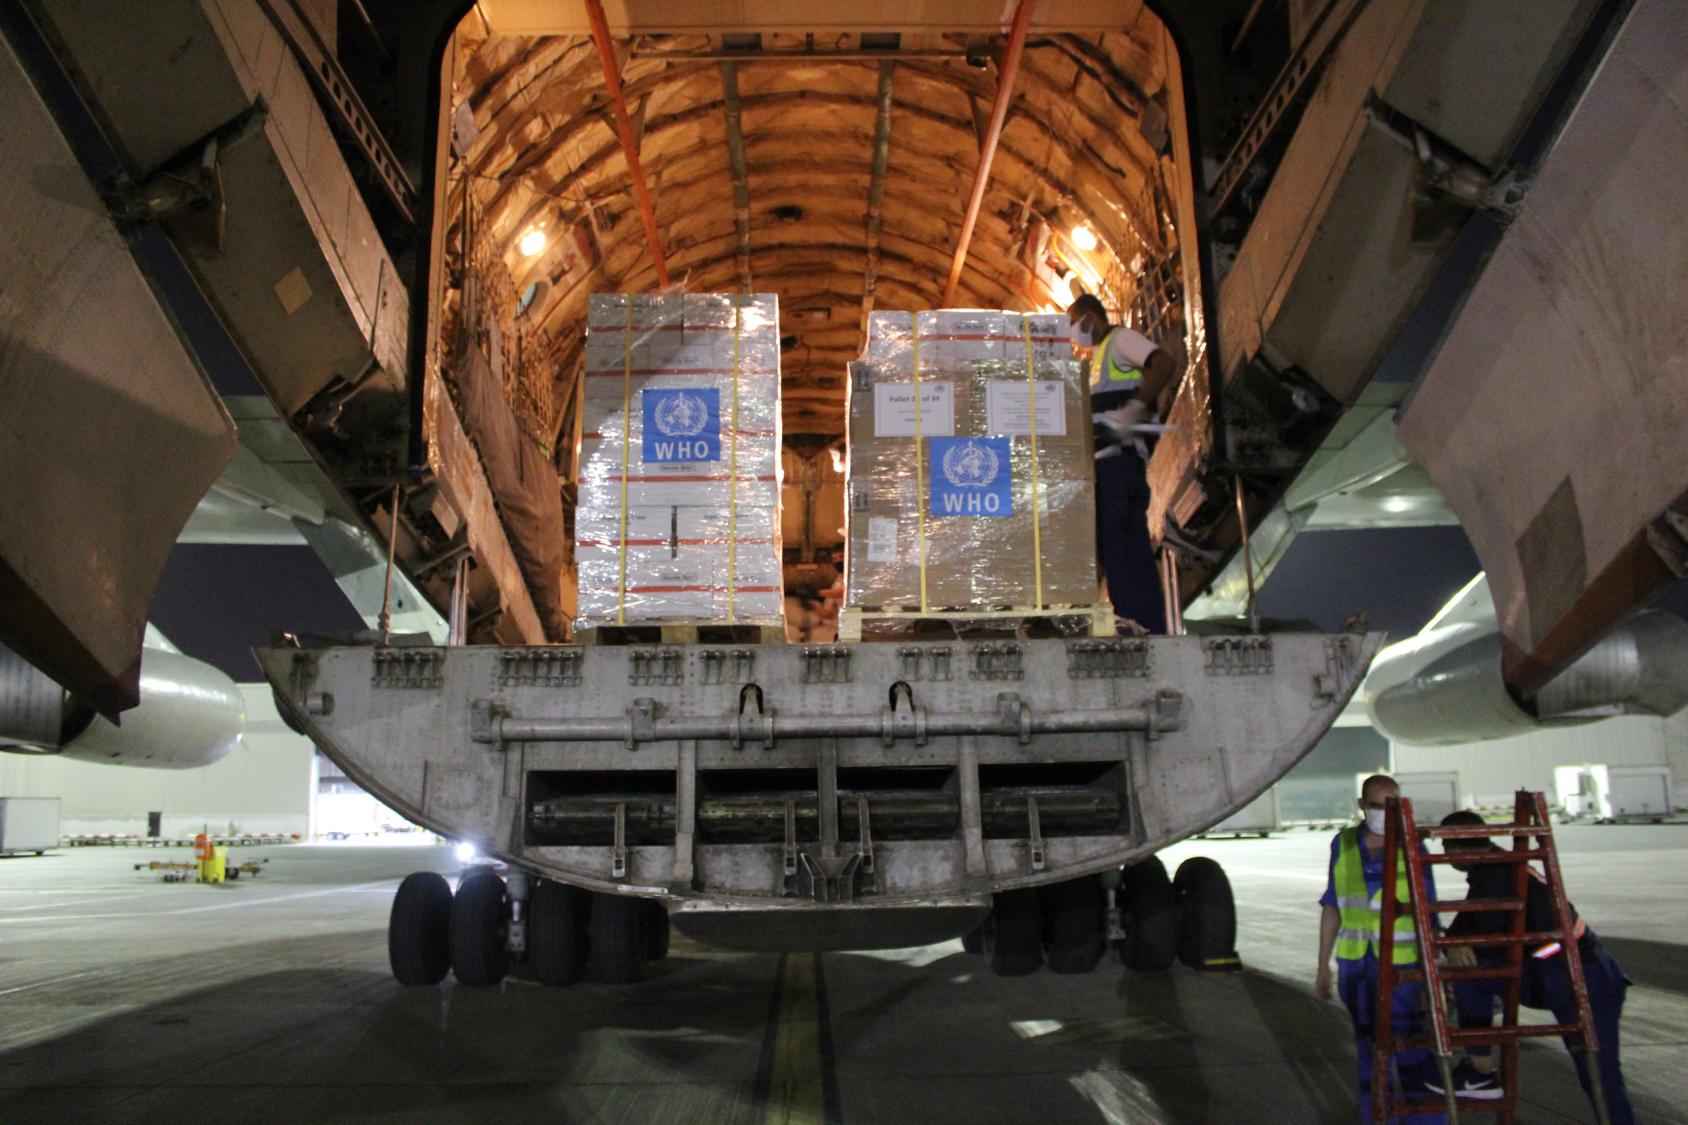  国际人道主义城市/阿联酋免费提供包机，向索马里运送世卫组织个人防护设备和生物医学用品。